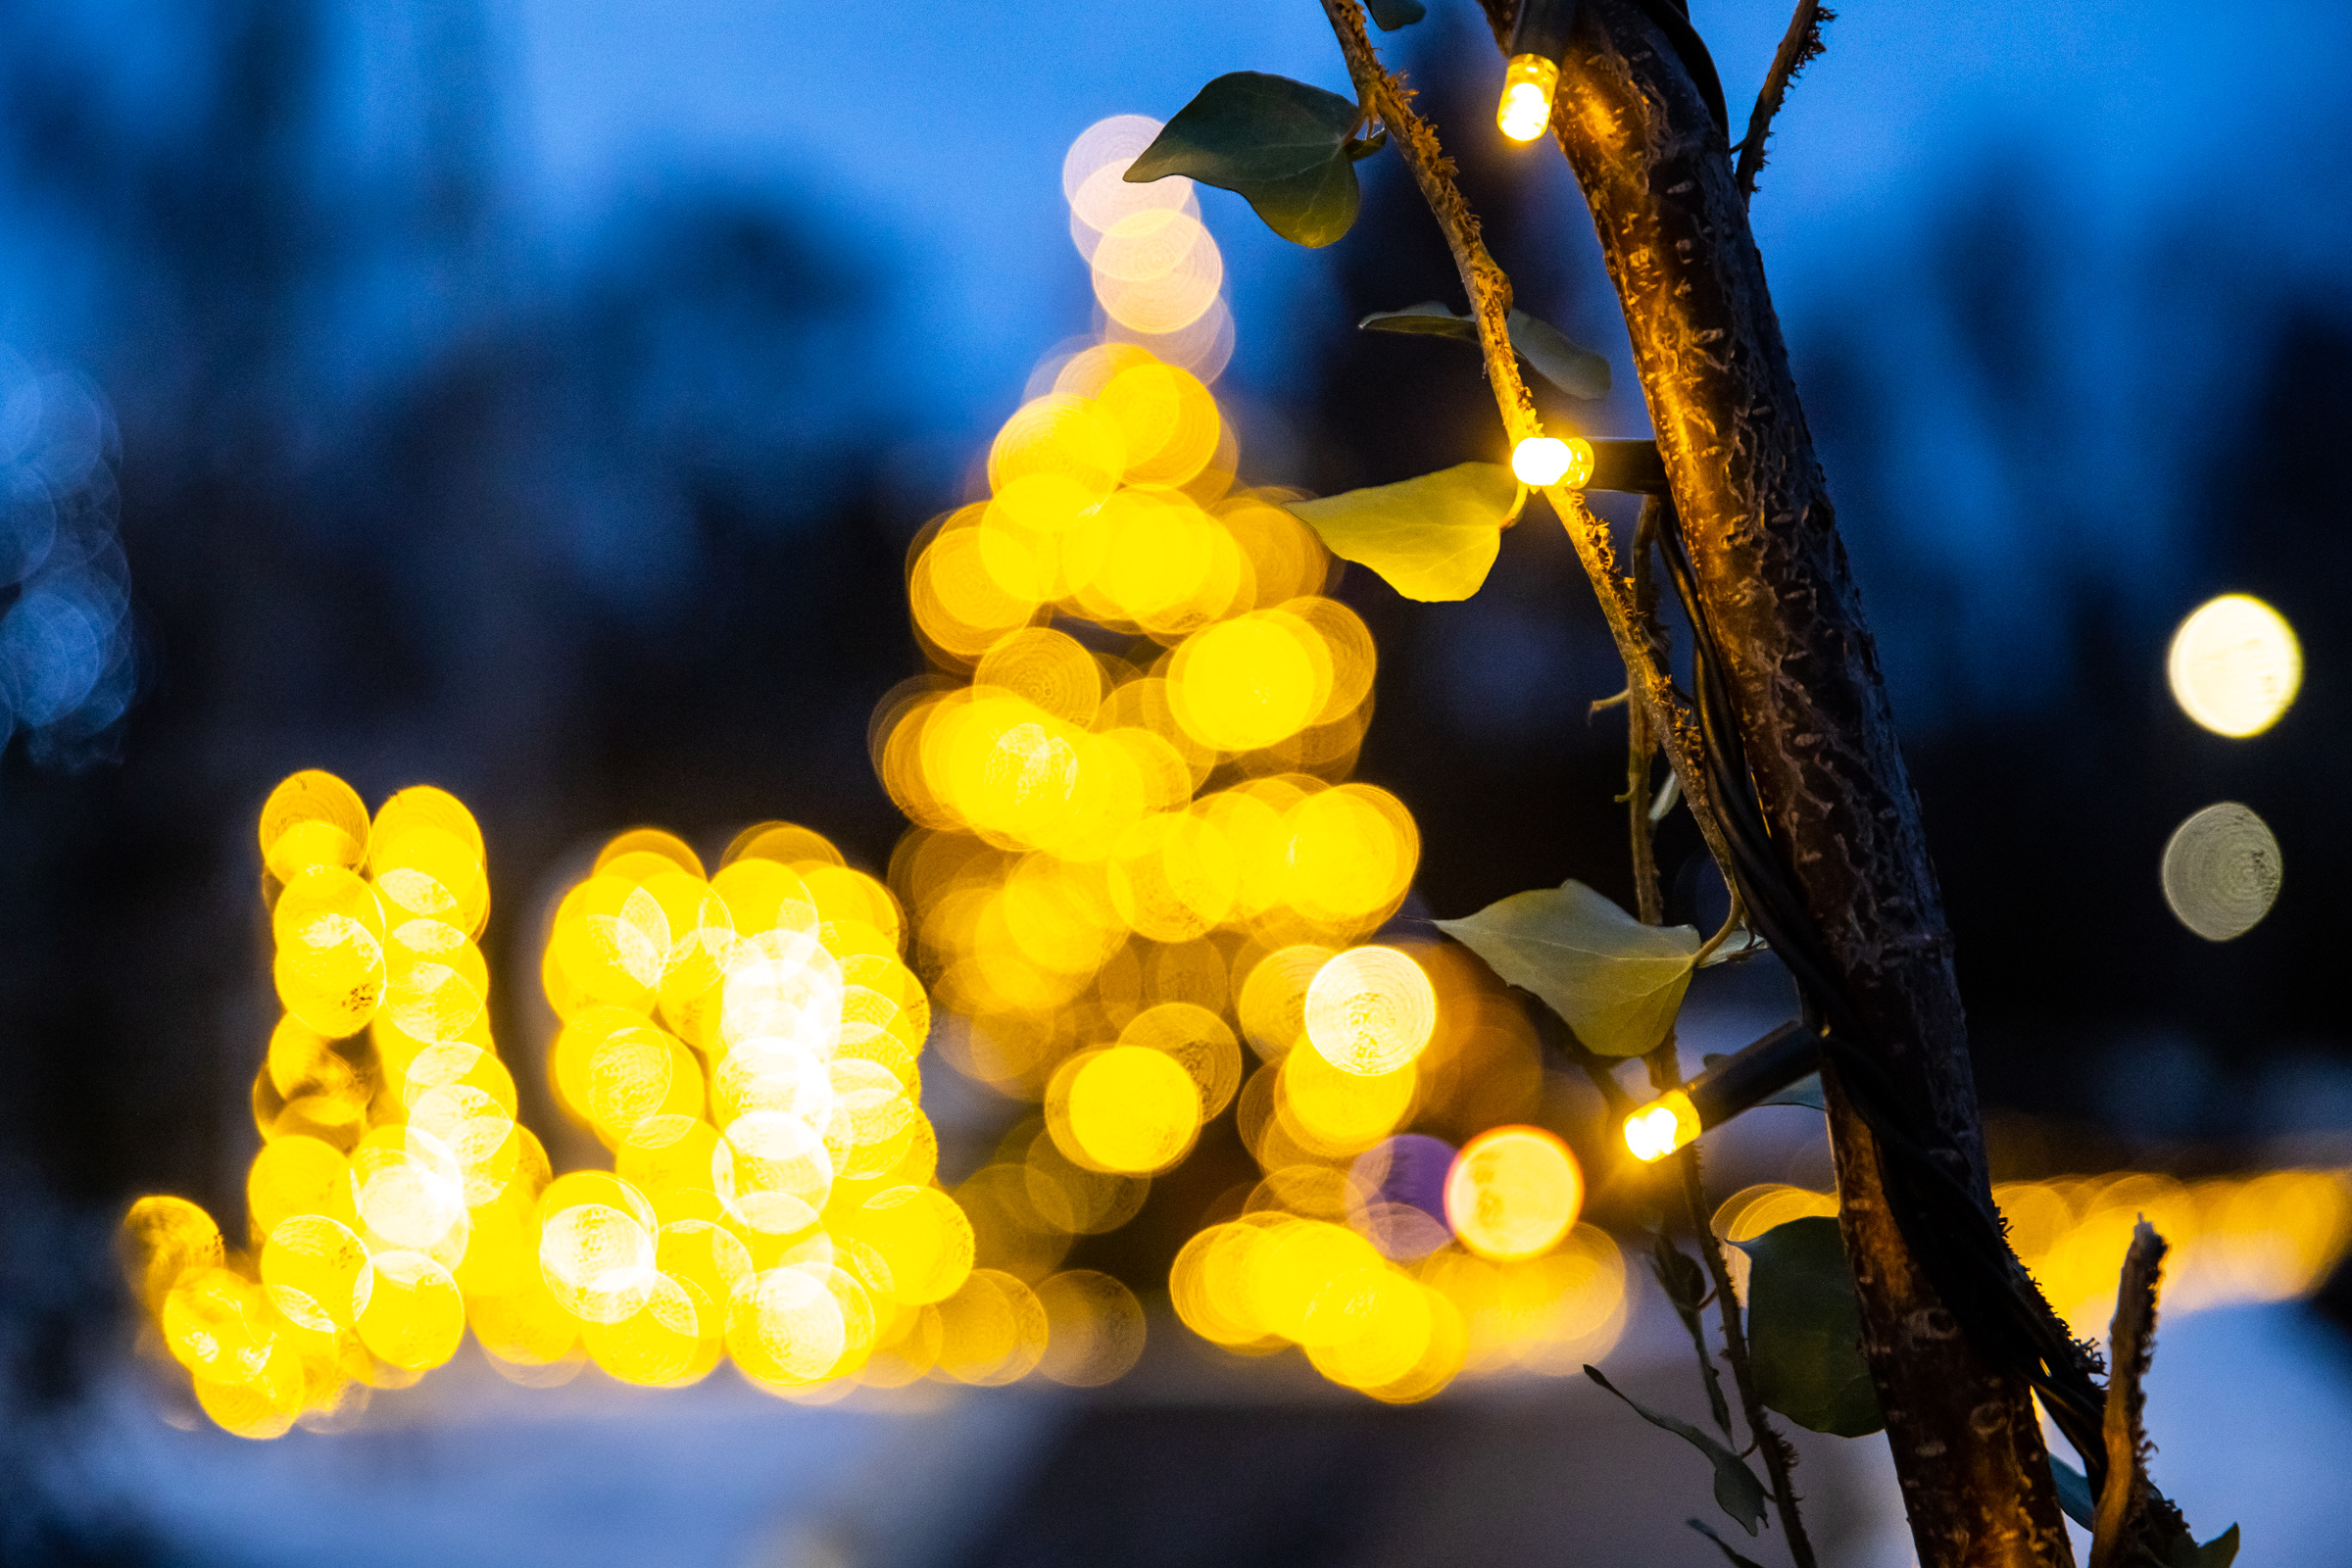 Jásd falu Karácsony galéria kivilágítás ünnepi fények